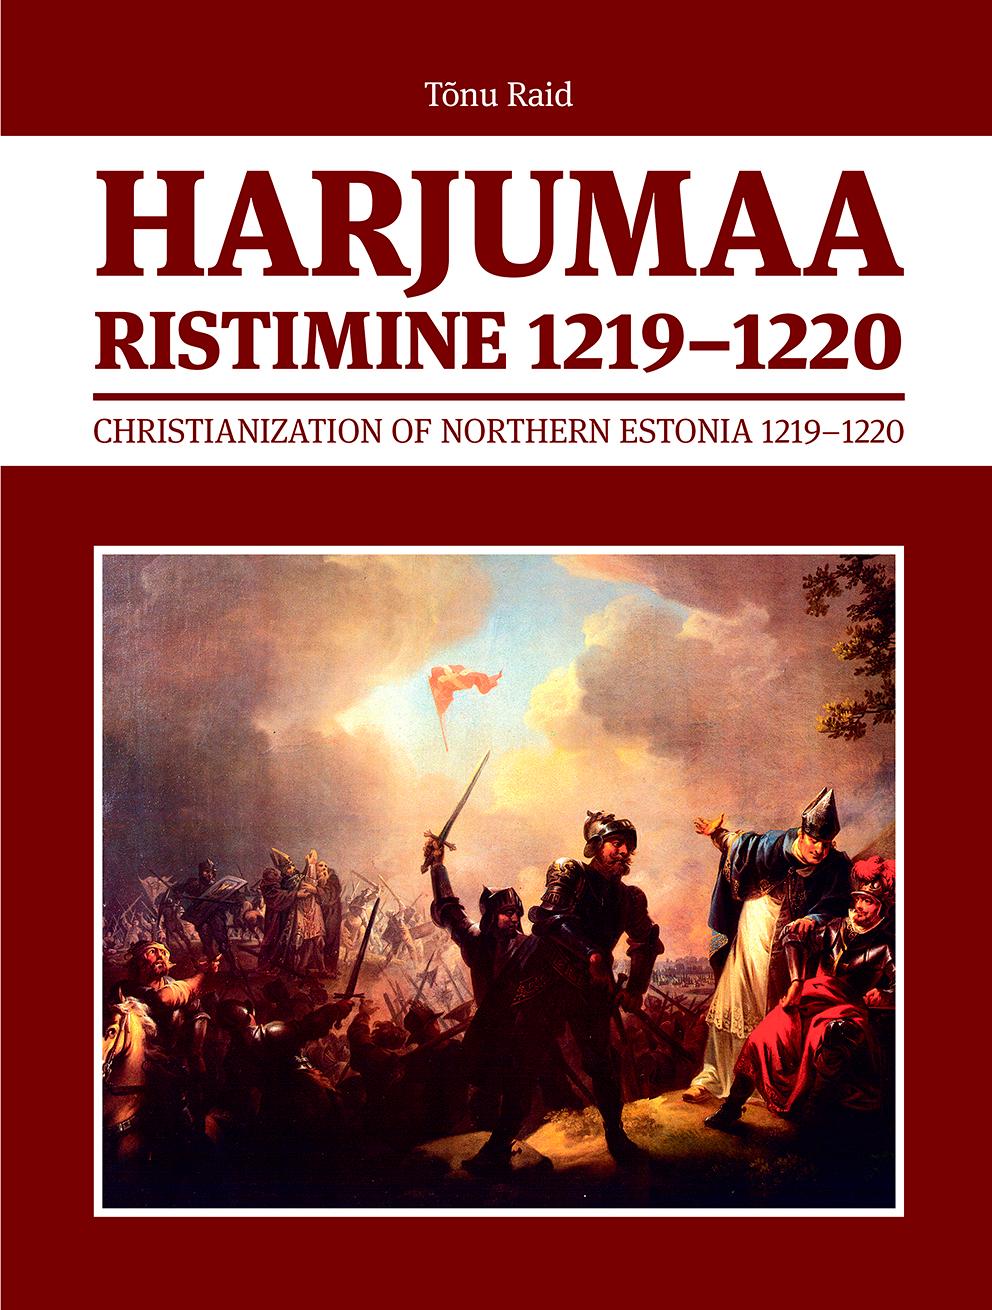 HARJUMAA RISTIMINE 1219-1220